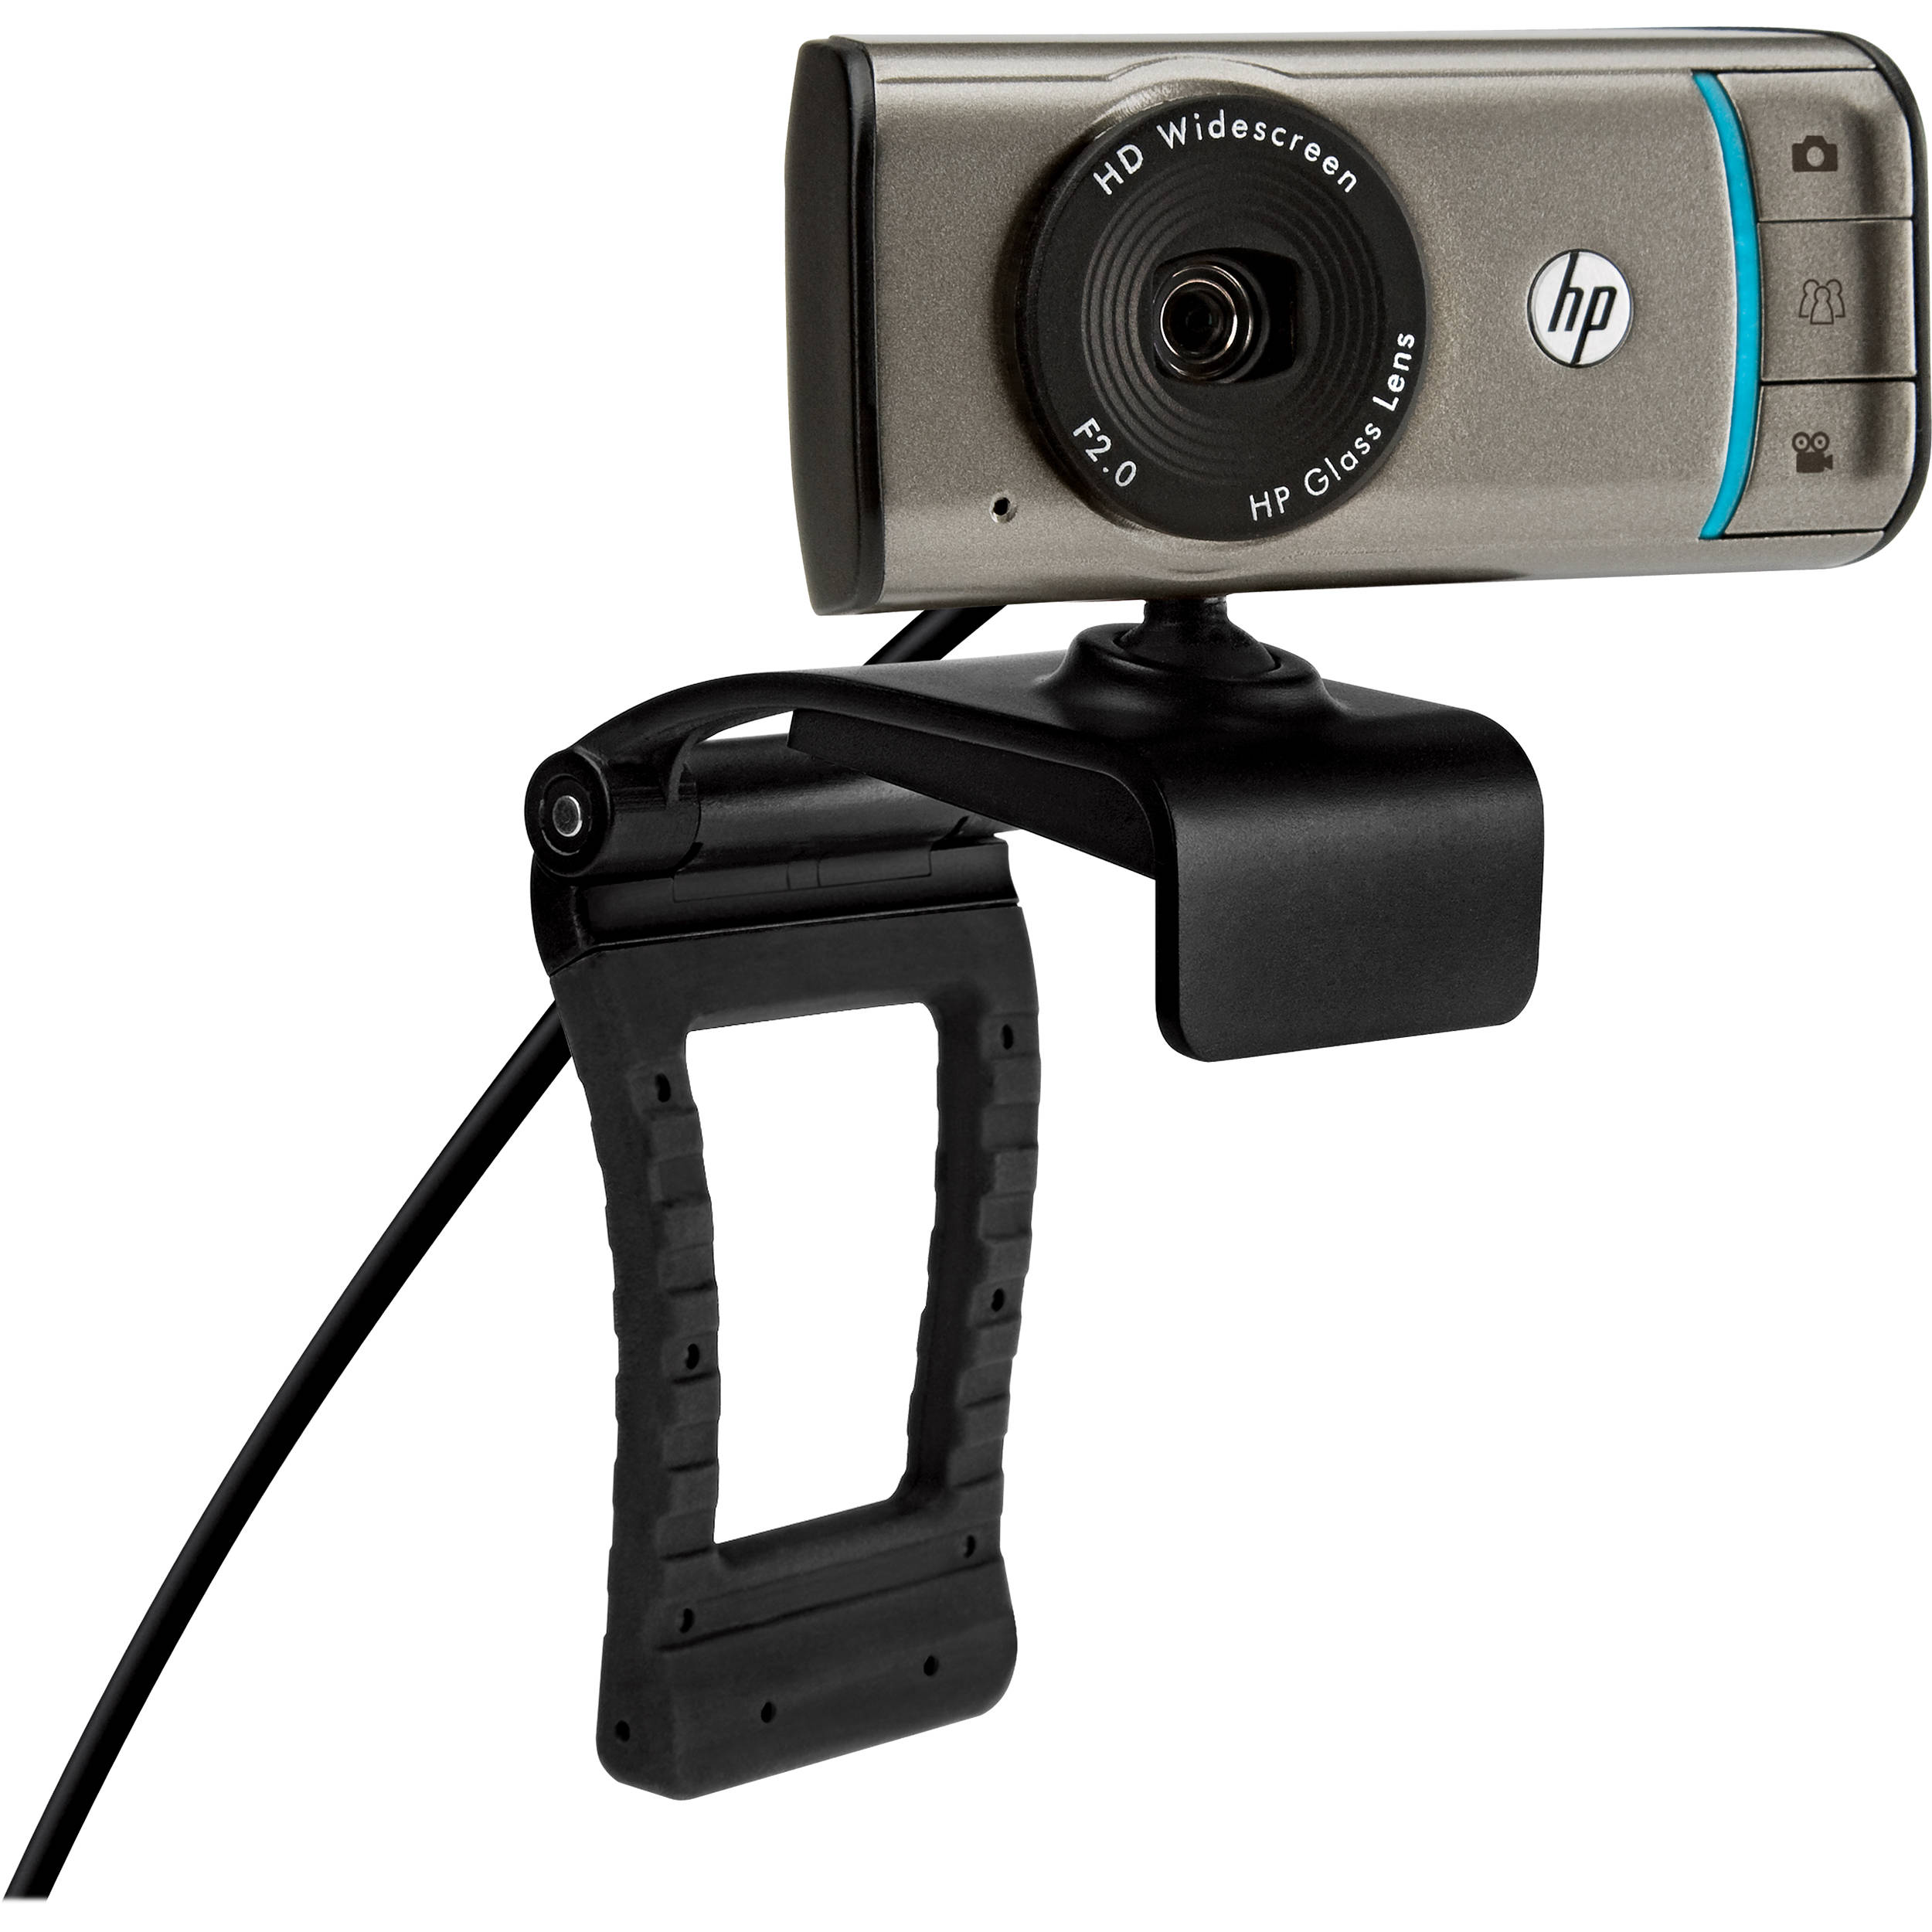 hp webcam driver update